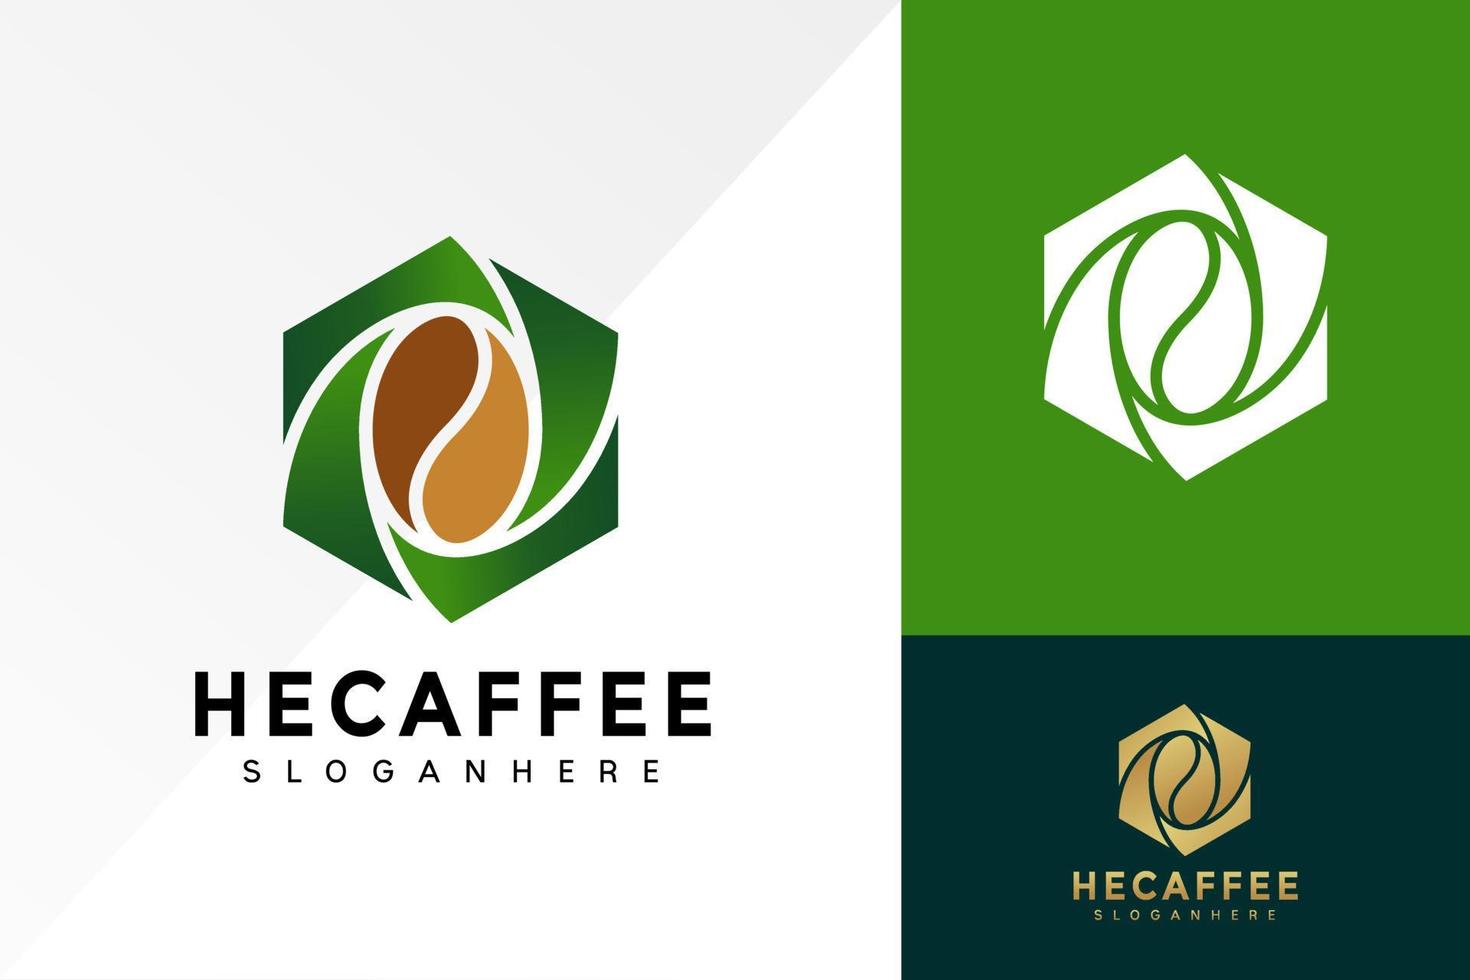 disegno del logo della caffetteria esagonale, vettore di loghi aziendali della caffeina, logo moderno, modello di illustrazione vettoriale di disegni di logo